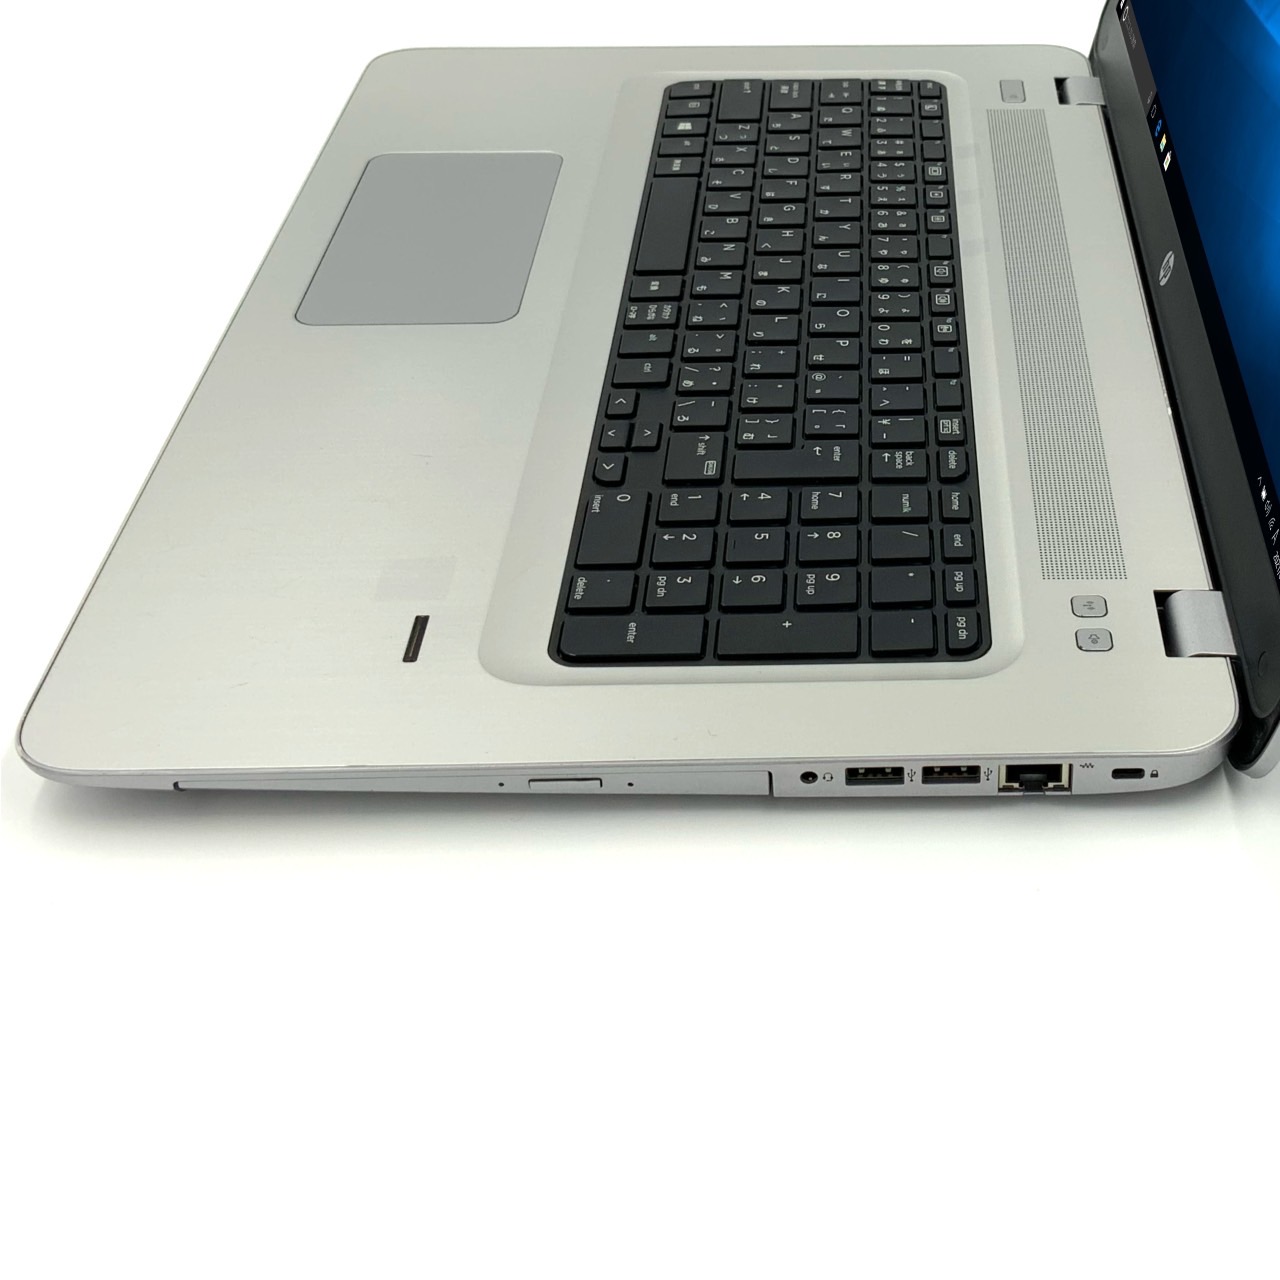 プロセッサ HP ノートPC HP ProBook 470 G4 Notebook PC i7-7500U/17F/4.0/1Tm/W10P